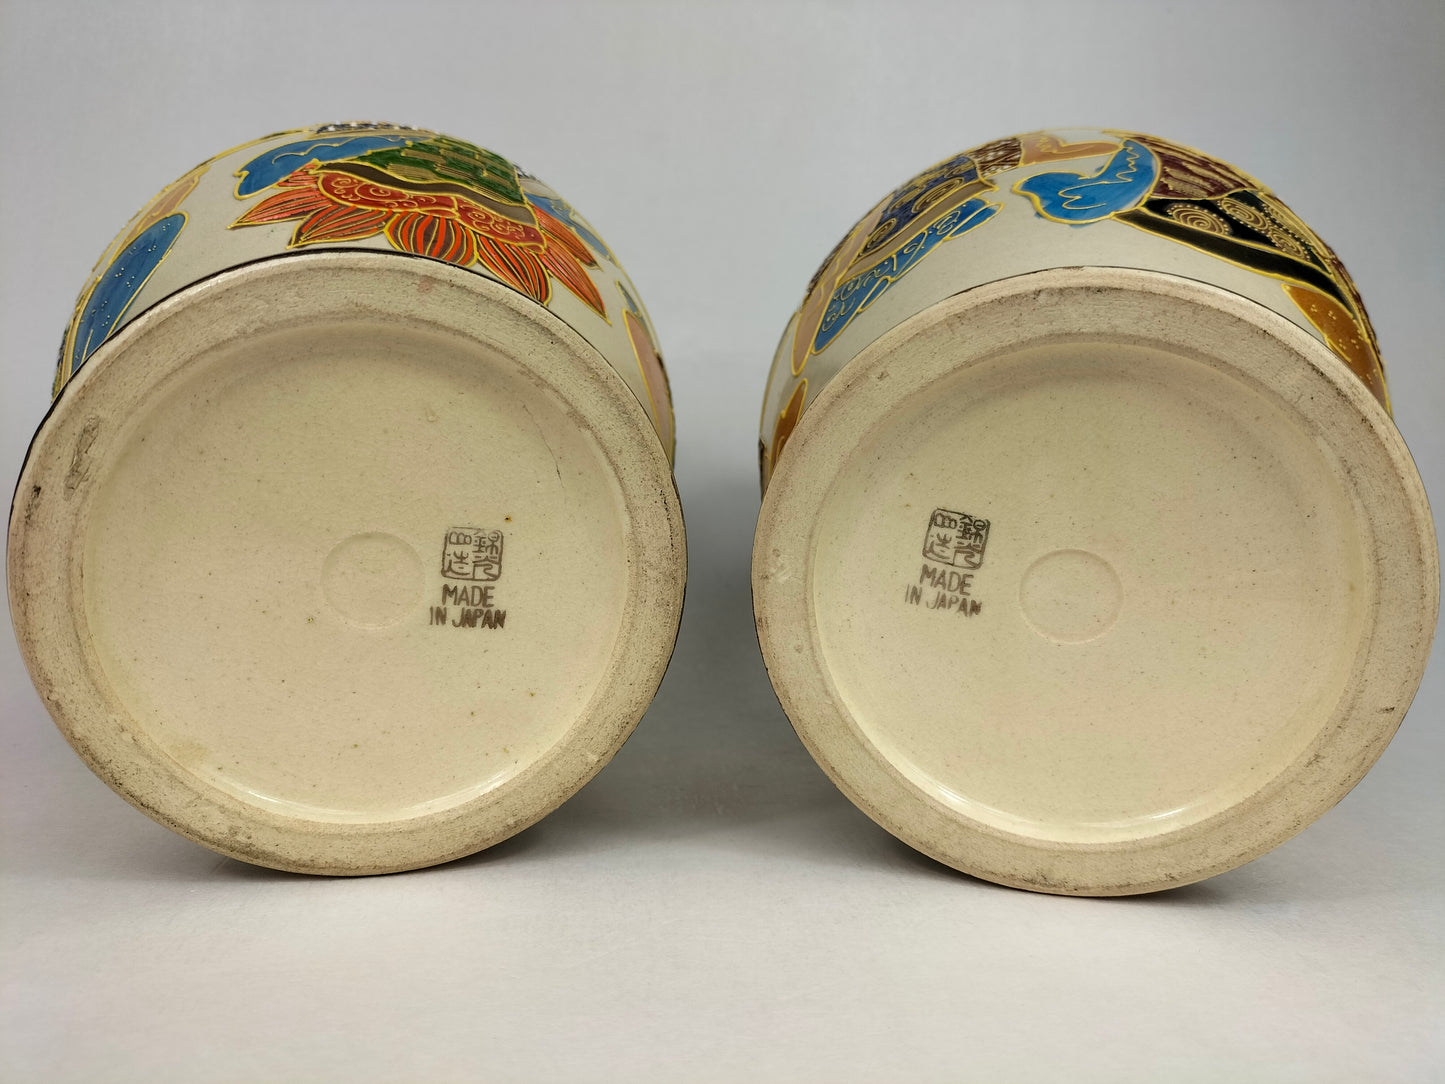 Ancienne paire de vases satsuma japonais avec personnages et dragons // Début du XXe siècle